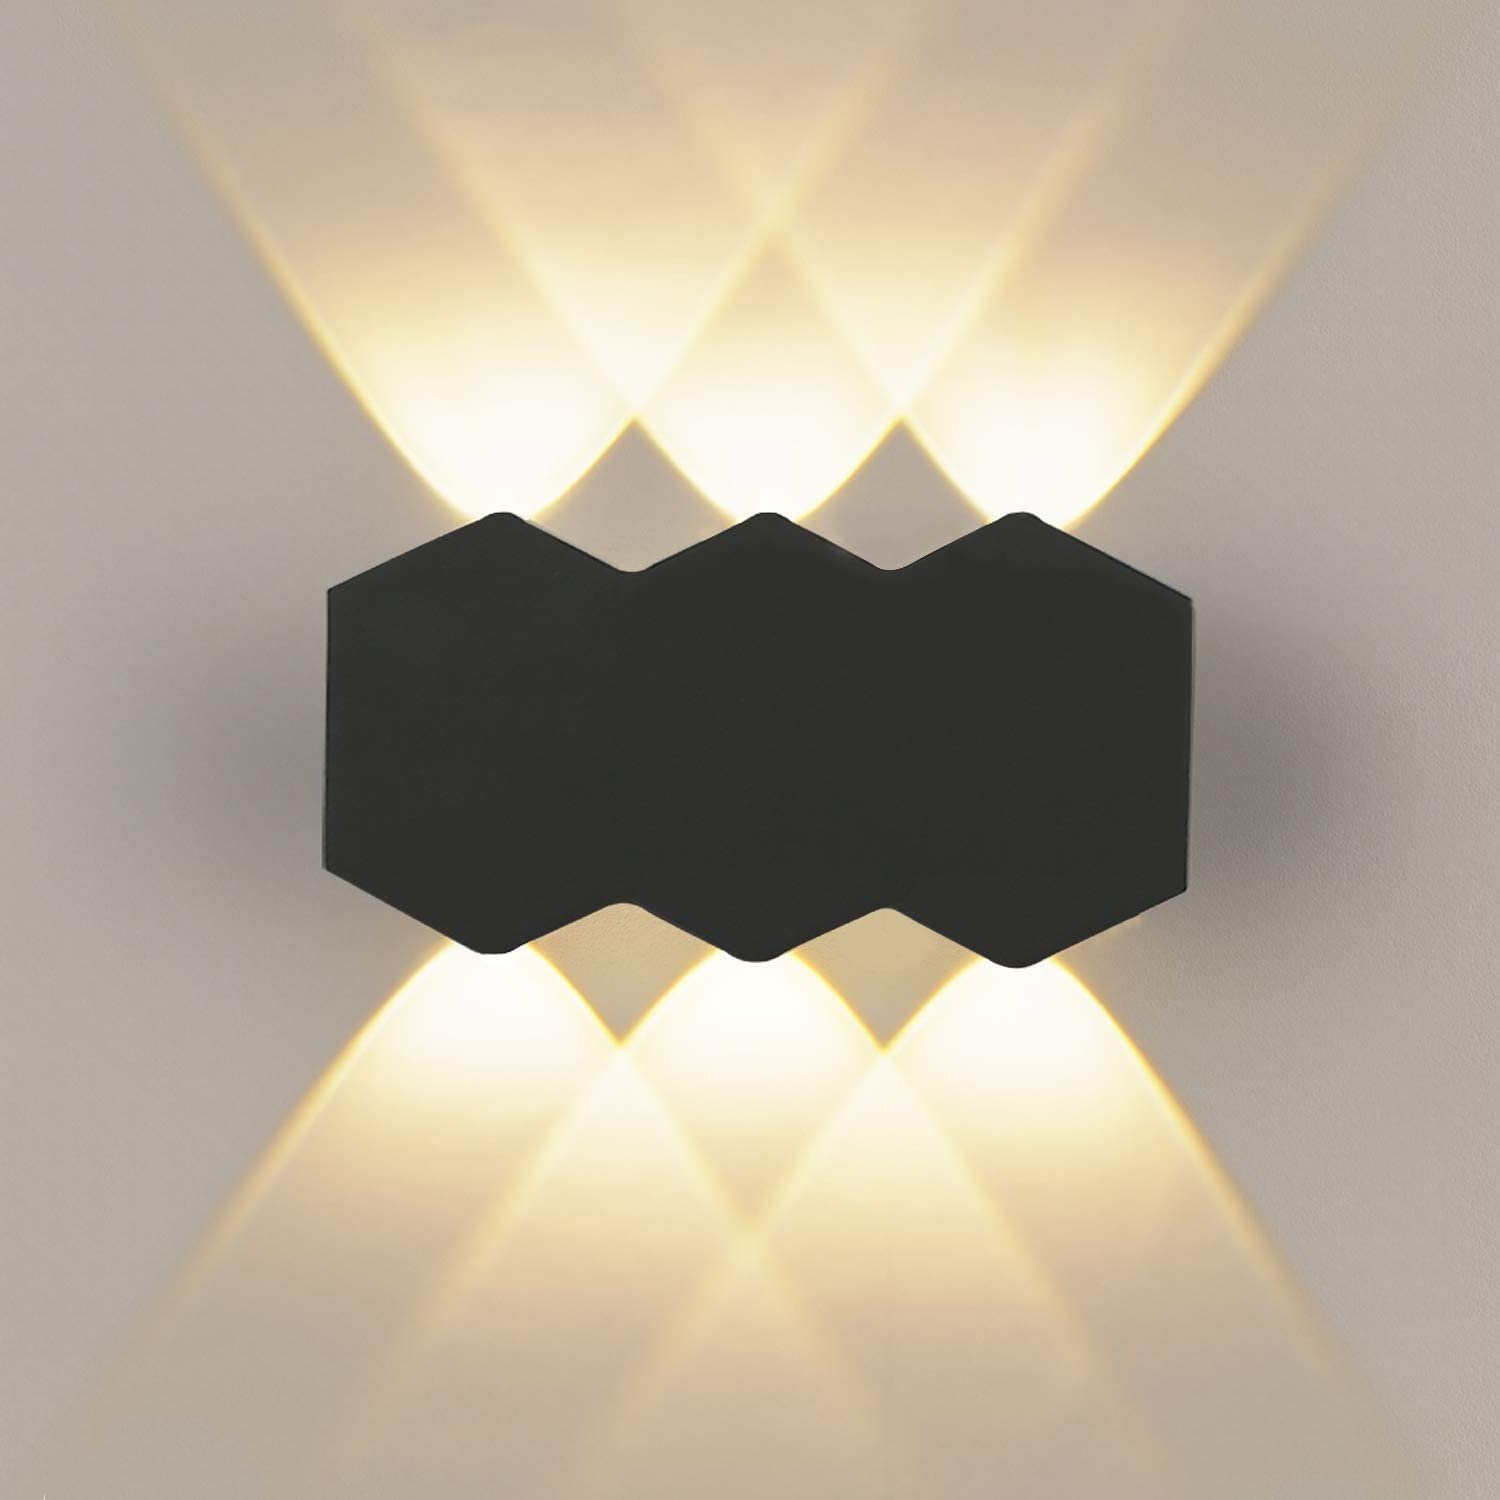 Design Wandlampe Strahler Flur Wandleuchten Wohn Zimmer Wand Lampen Aluminium 